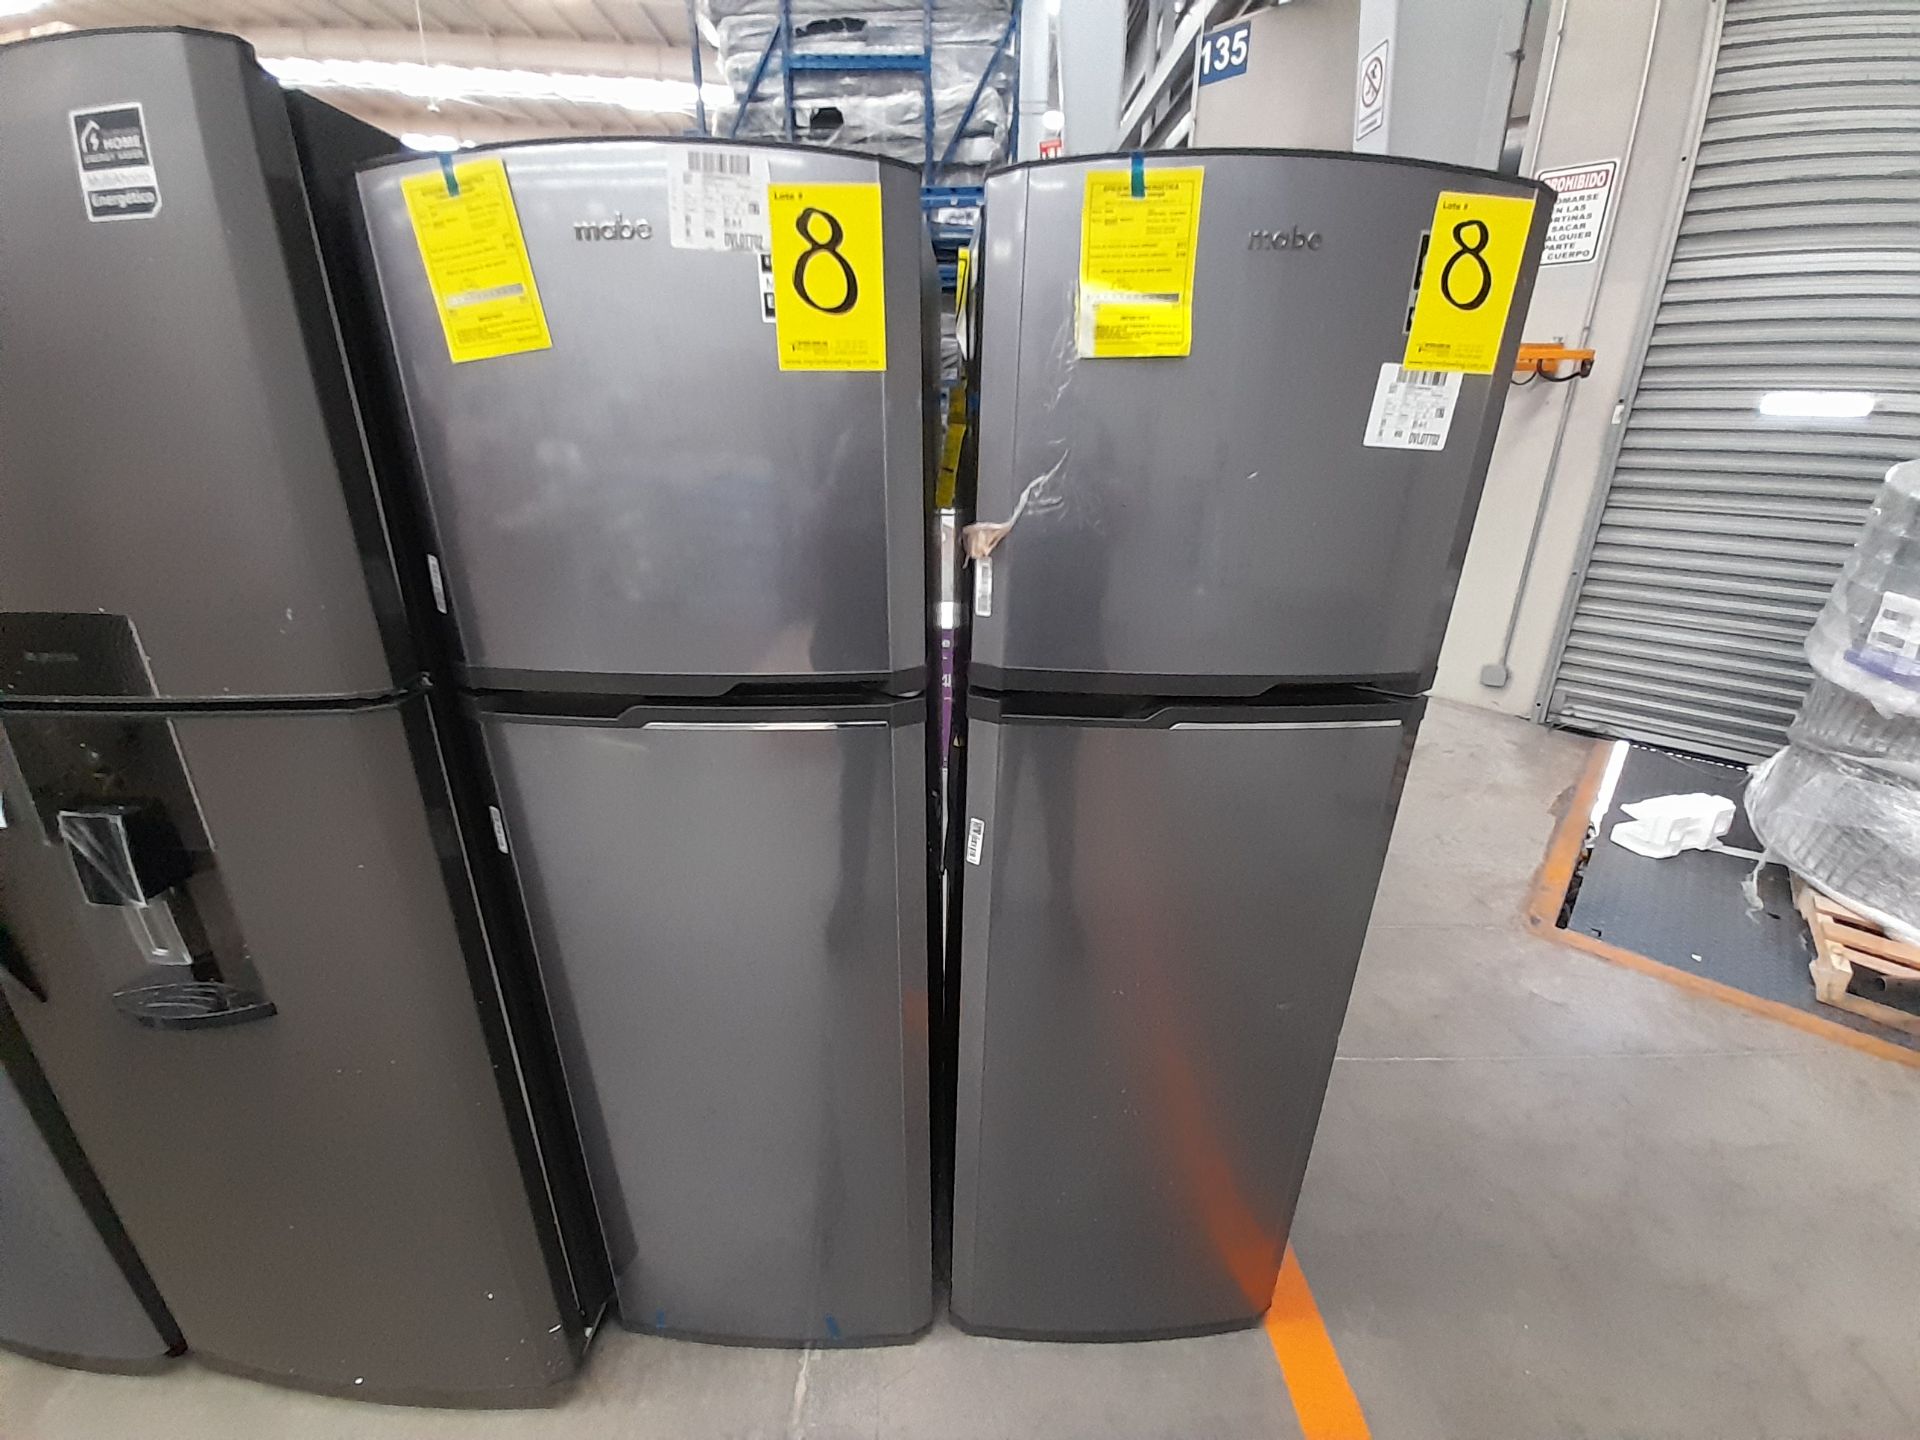 Lote de 2 refrigeradores contiene: 1 refrigerador Marca MABE, Modelo RMA250PVMRE, Serie 606836,